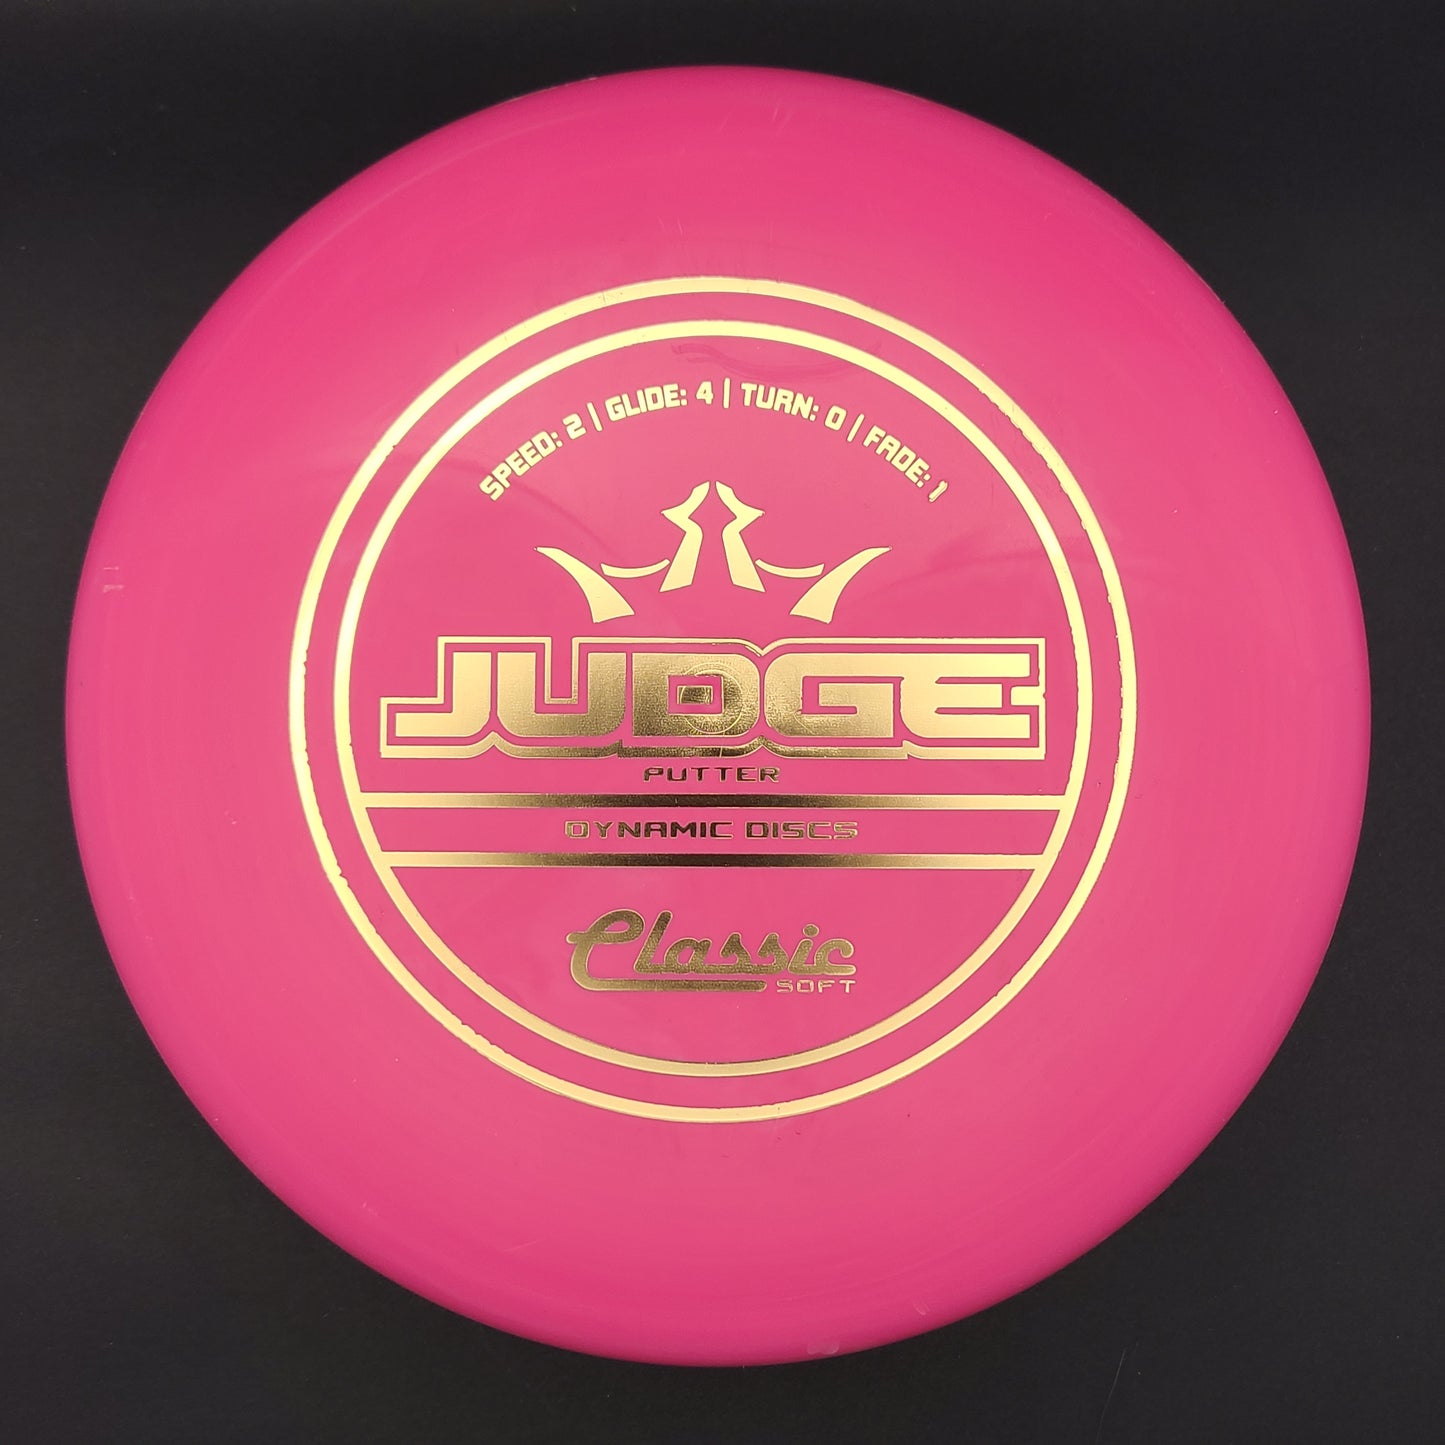 Dynamic Discs - Judge - Classic Soft